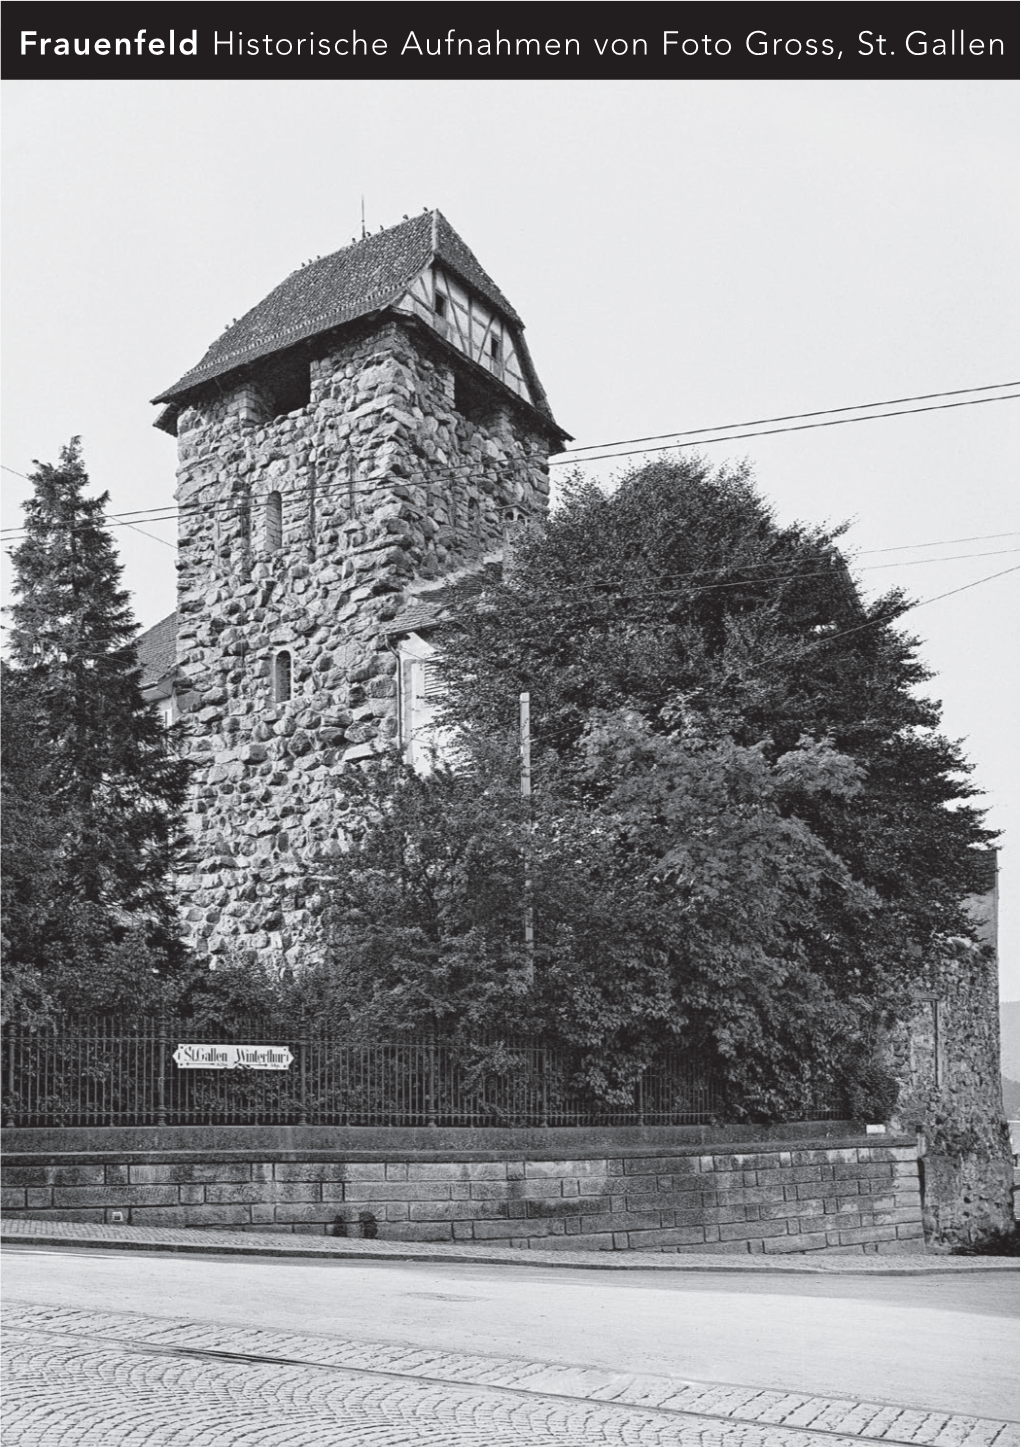 Frauenfeld Historische Aufnahmen Von Foto Gross, St. Gallen